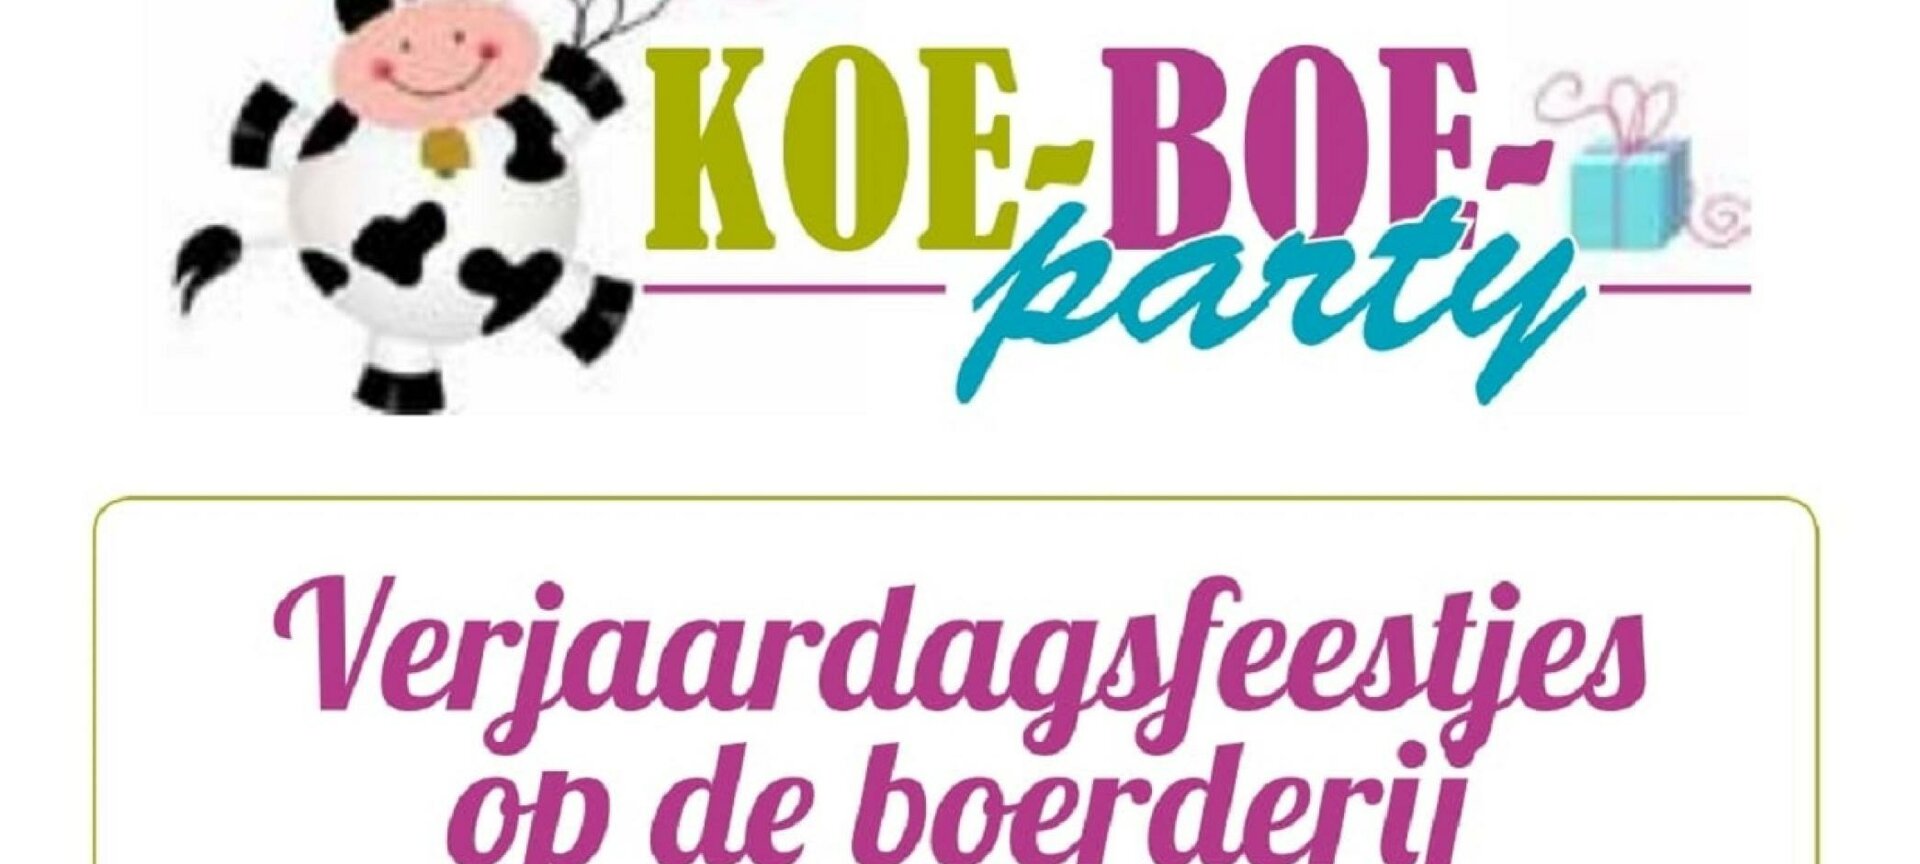 Koe-Boe-Party - aanbod kids